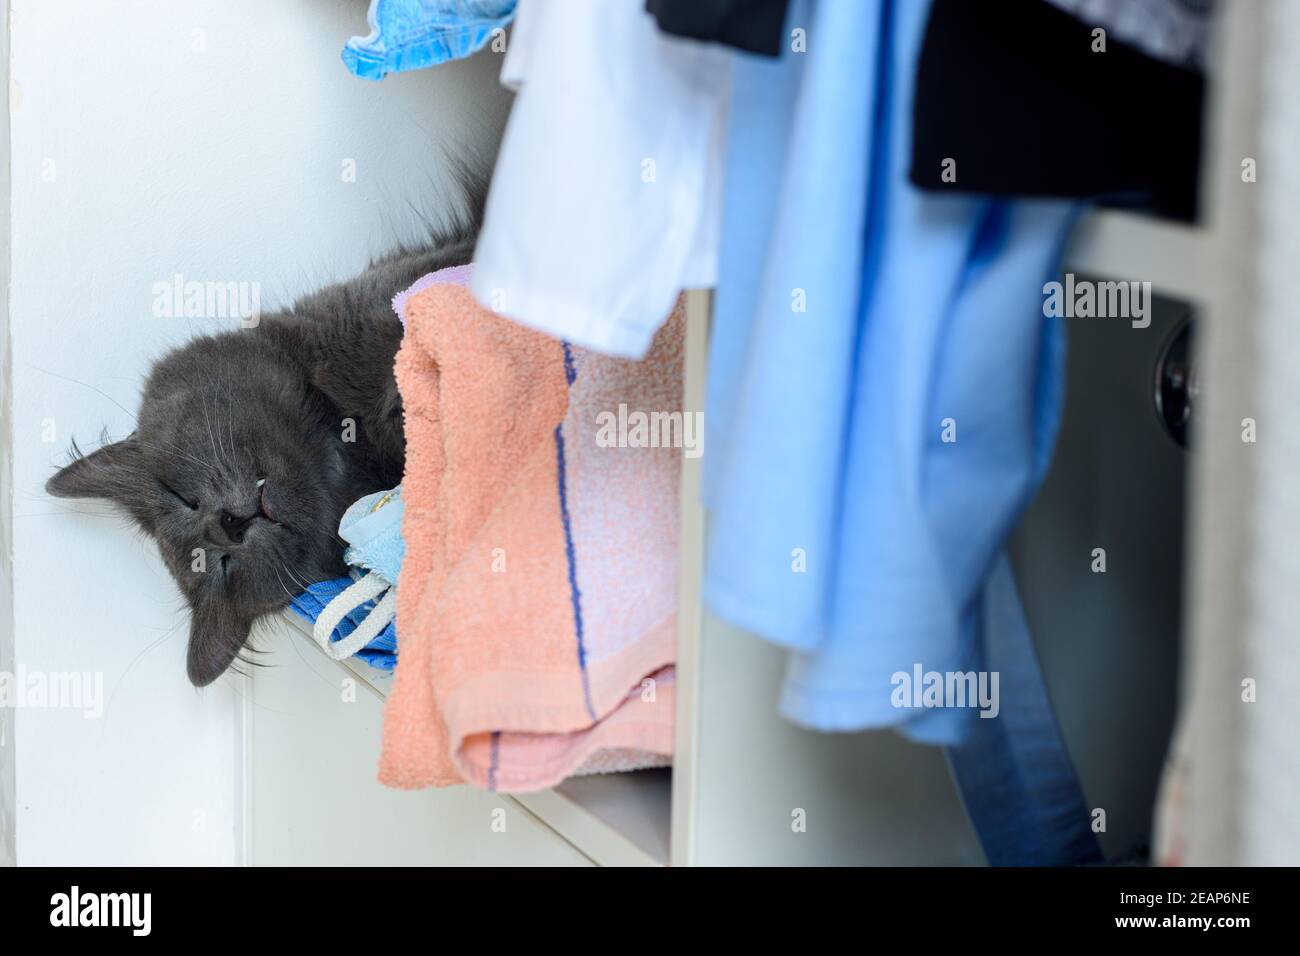 La tête d'un chat endormi pend d'une étagère avec des serviettes d'une armoire ouverte Banque D'Images